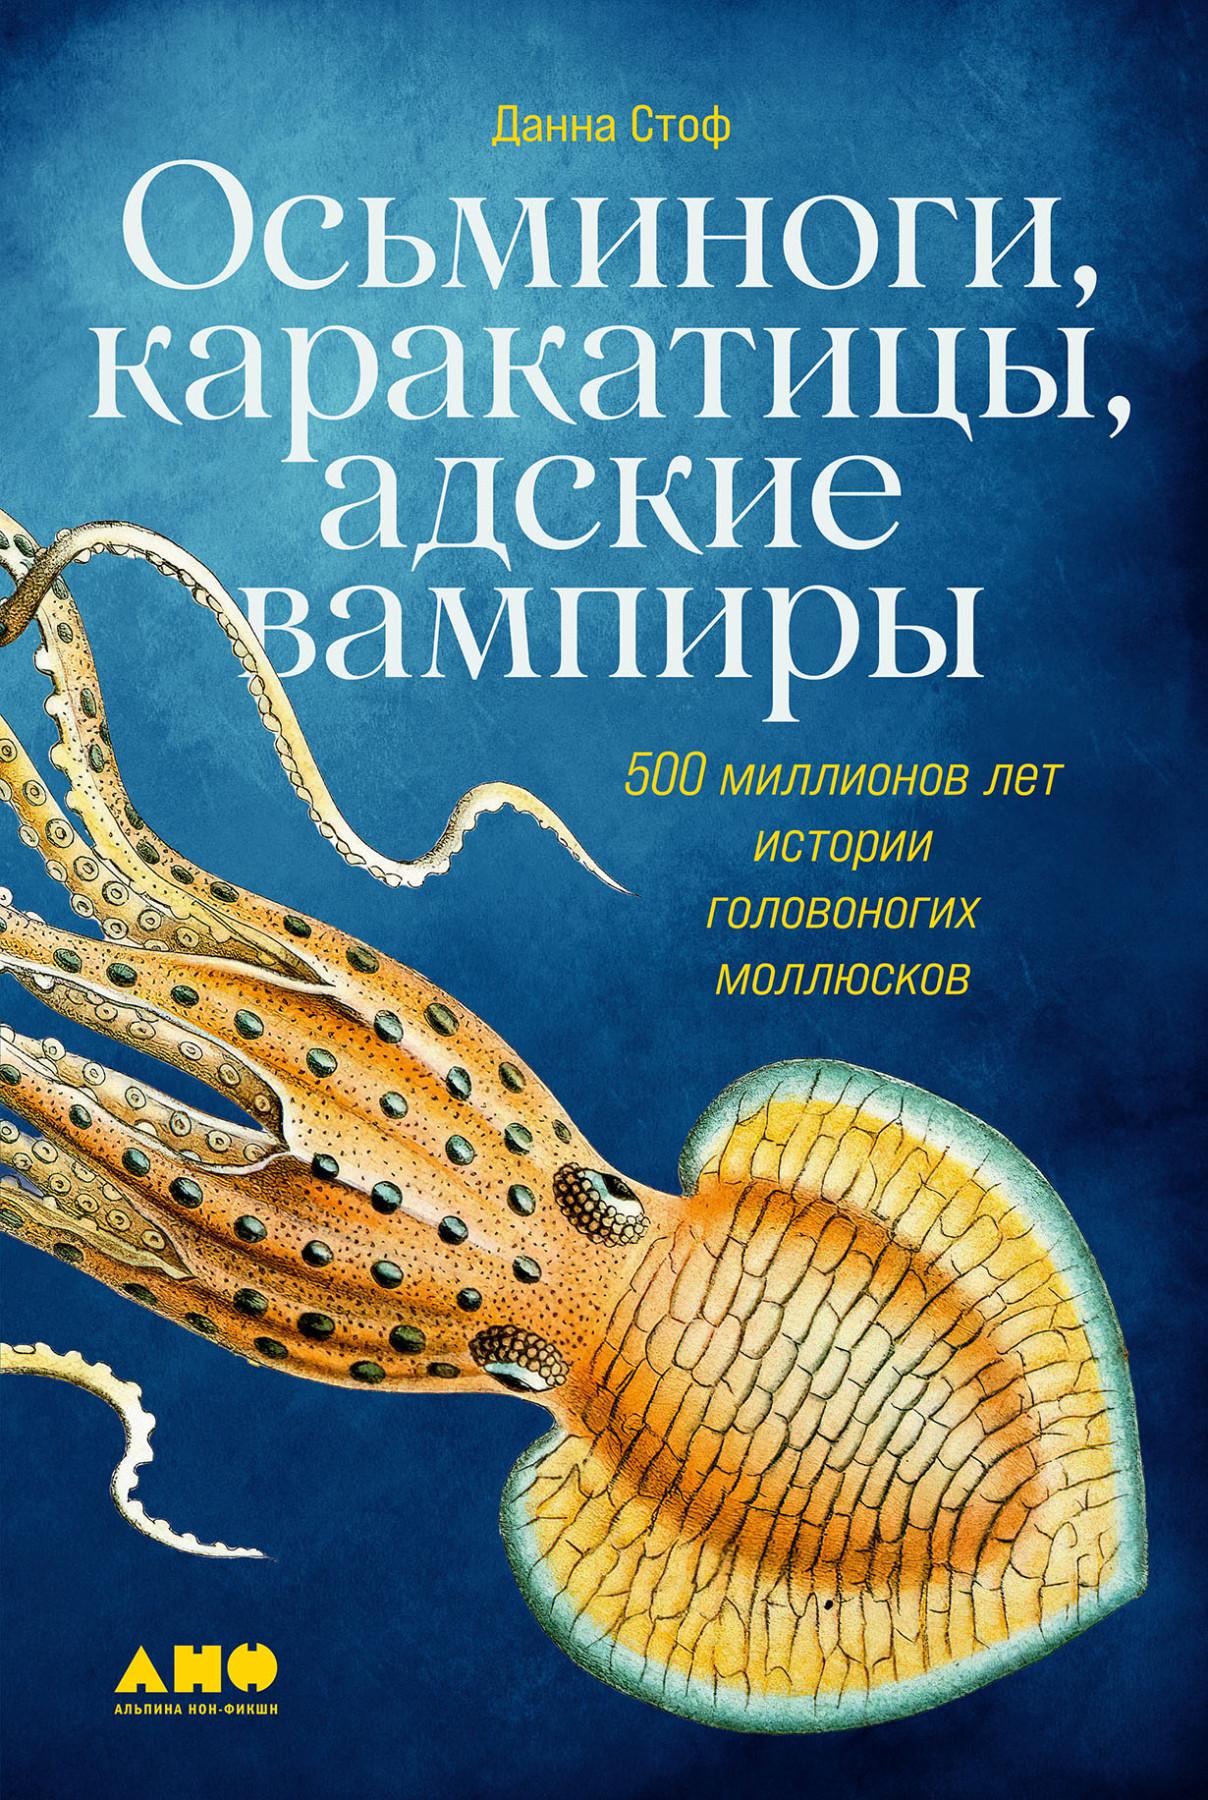 Данна Стоф, «Осьминоги, каракатицы, адские вампиры. 500 миллионов лет истории головоногих моллюсков»